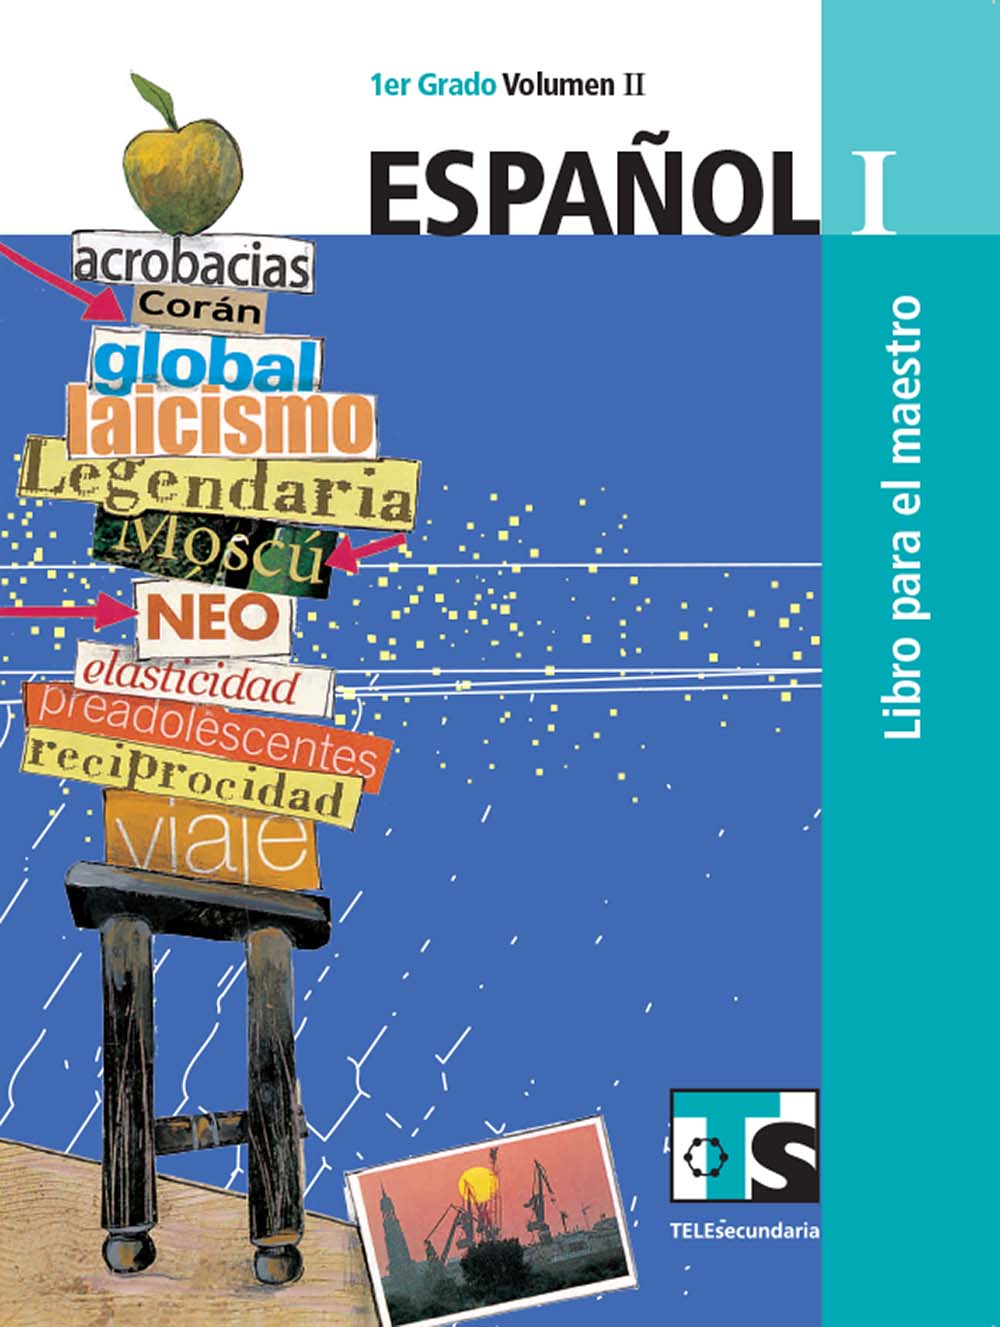 Español I. Vol. II. Libro para el Maestro., Editorial: Secretaría de Educación Pública, Nivel: Telesecundaria, Grado: 1